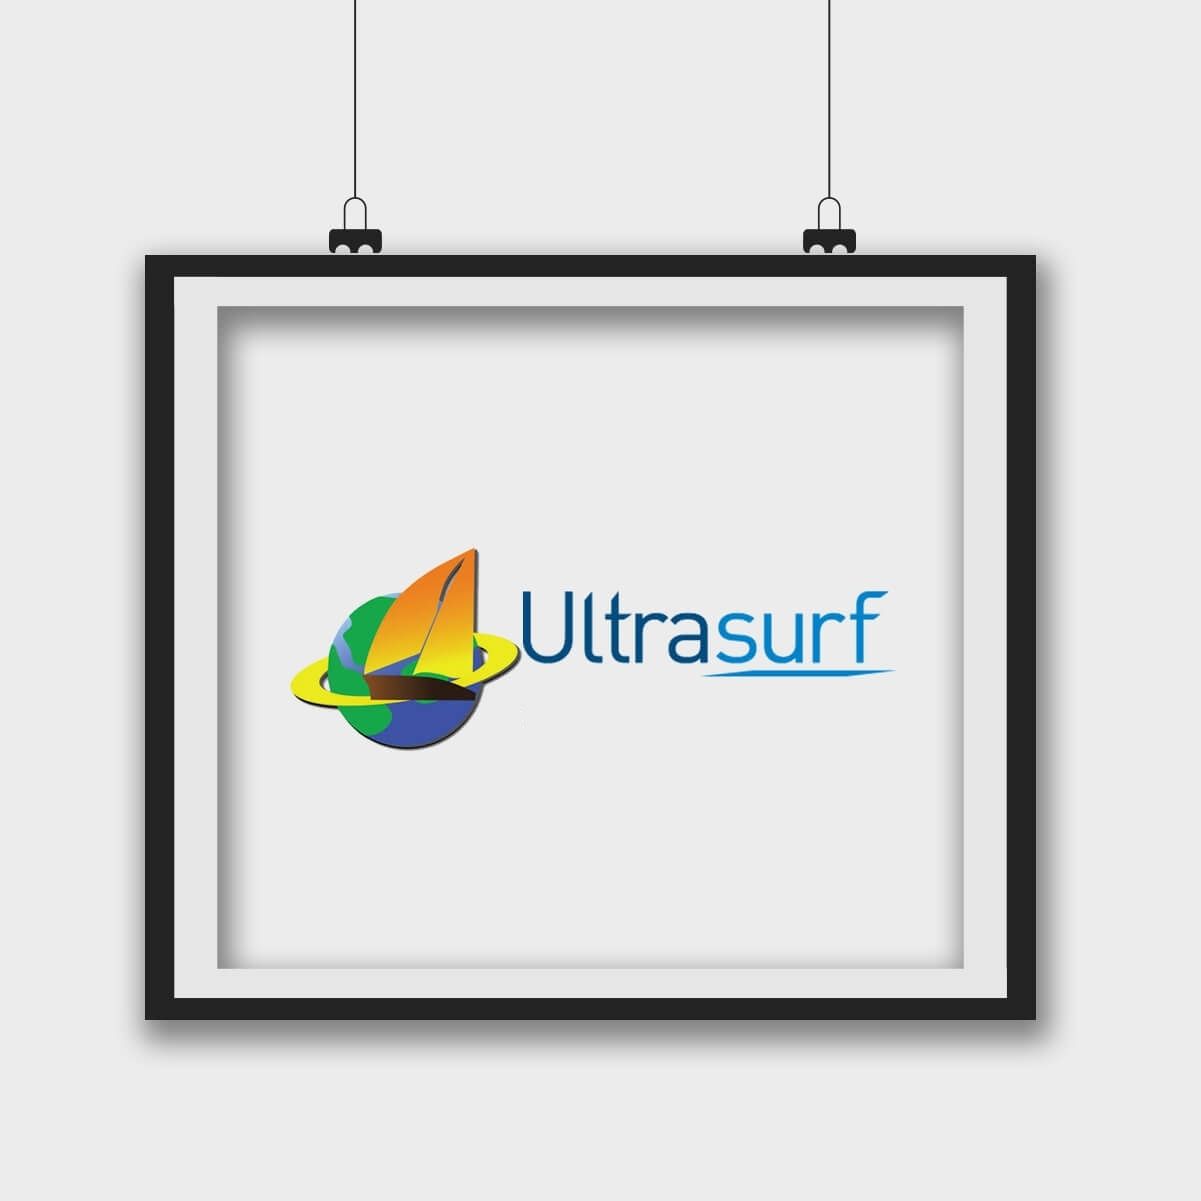 Đánh giá Ưu và nhược điểm của Ultrasurf